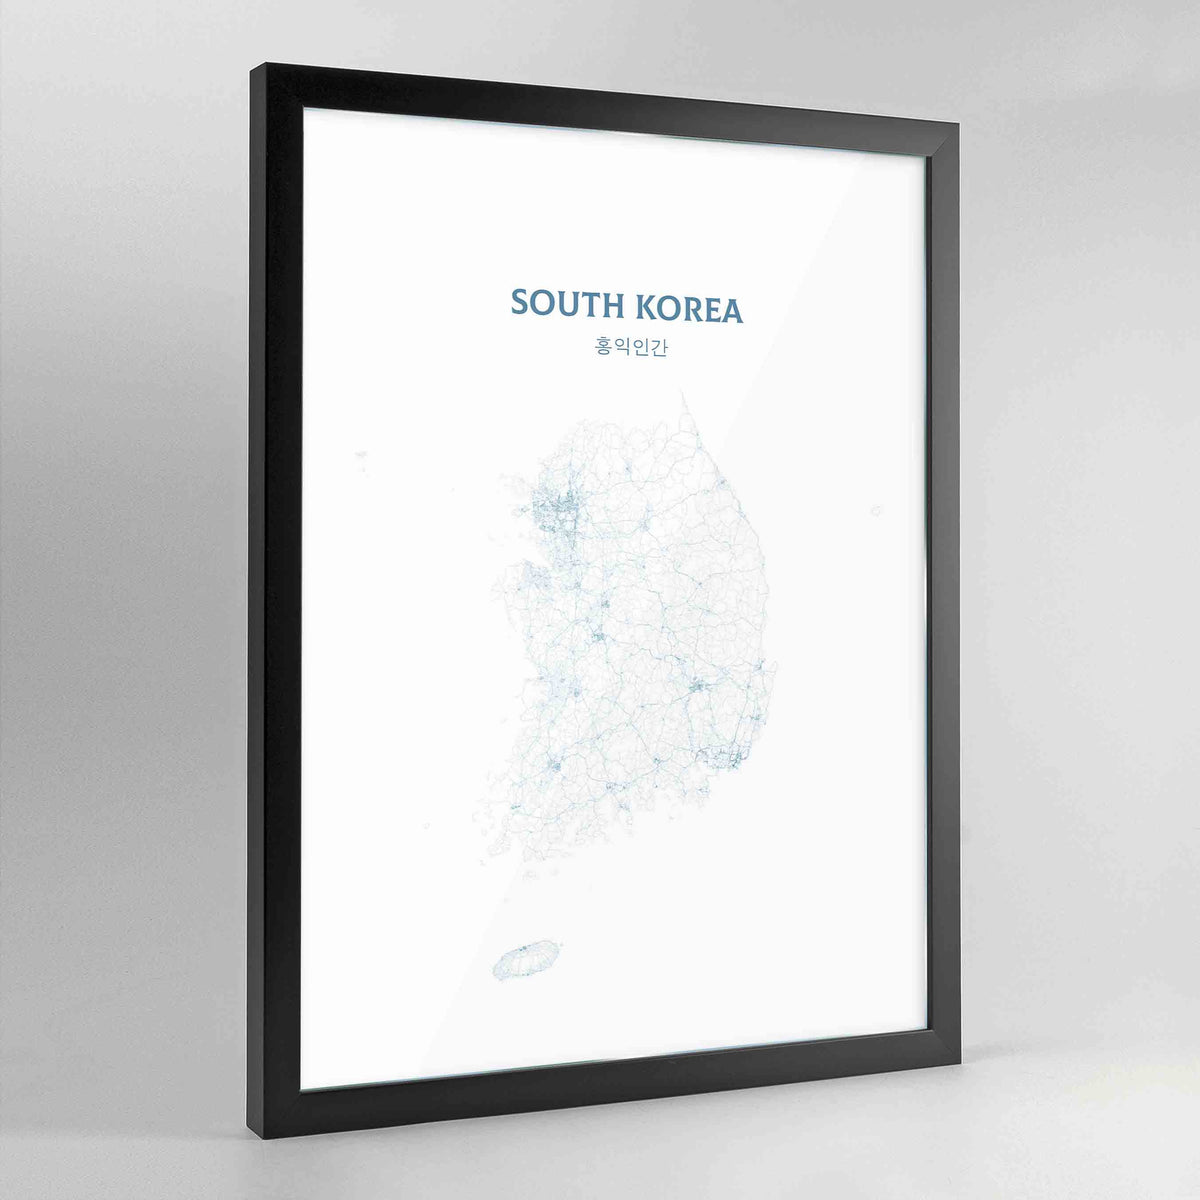 South Korea - All Roads Art Print - Framed